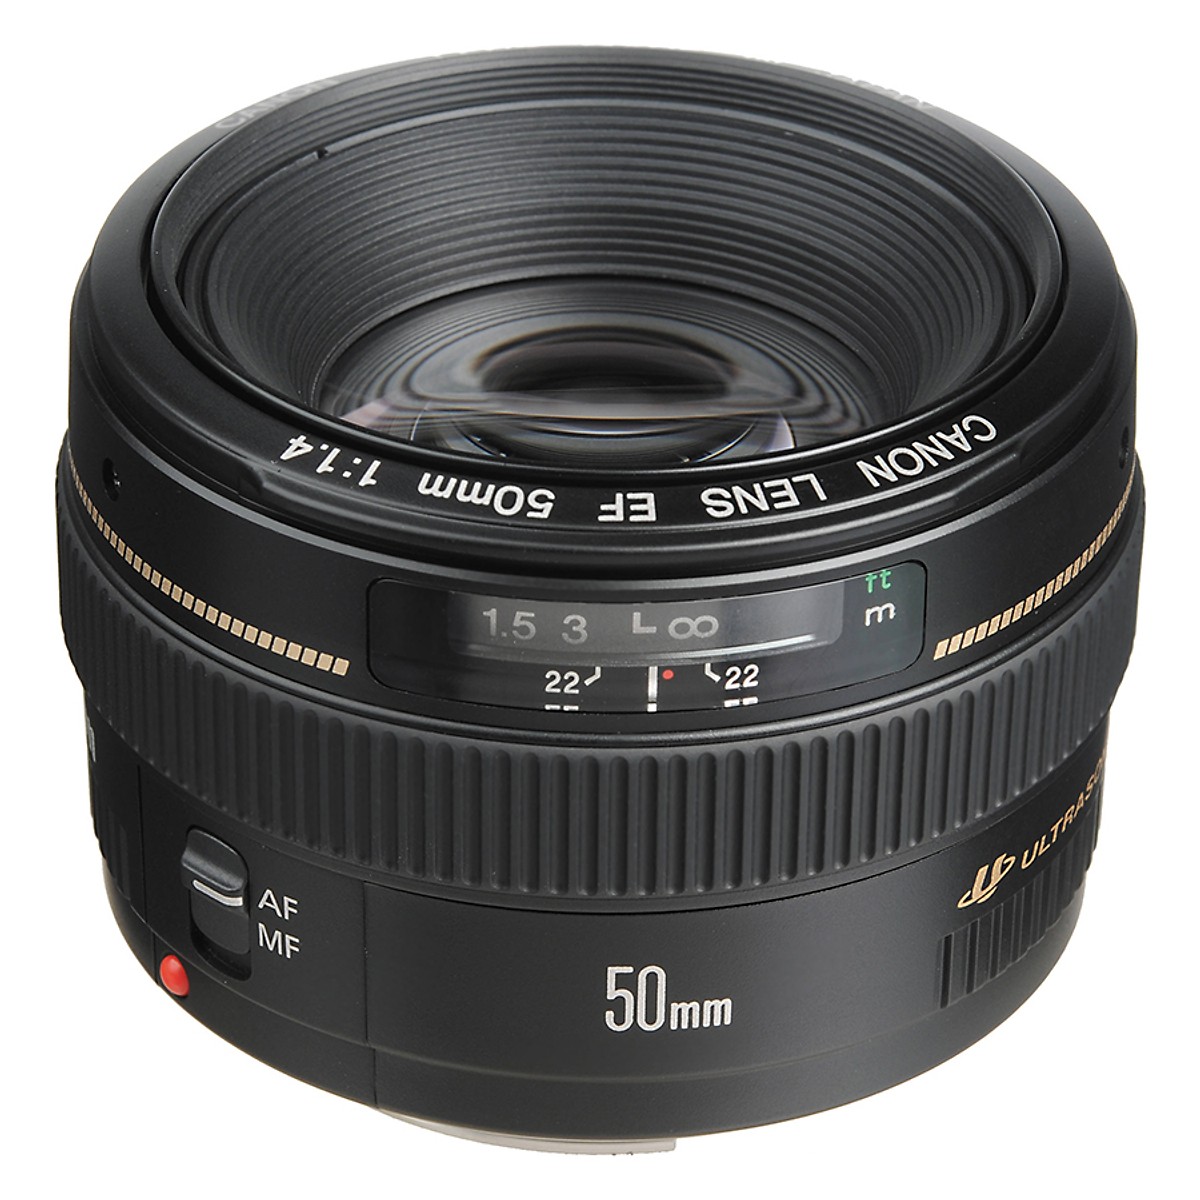 Ống kính Canon EF 50mm f/1.4 USM (Hàng chính hãng LBM)